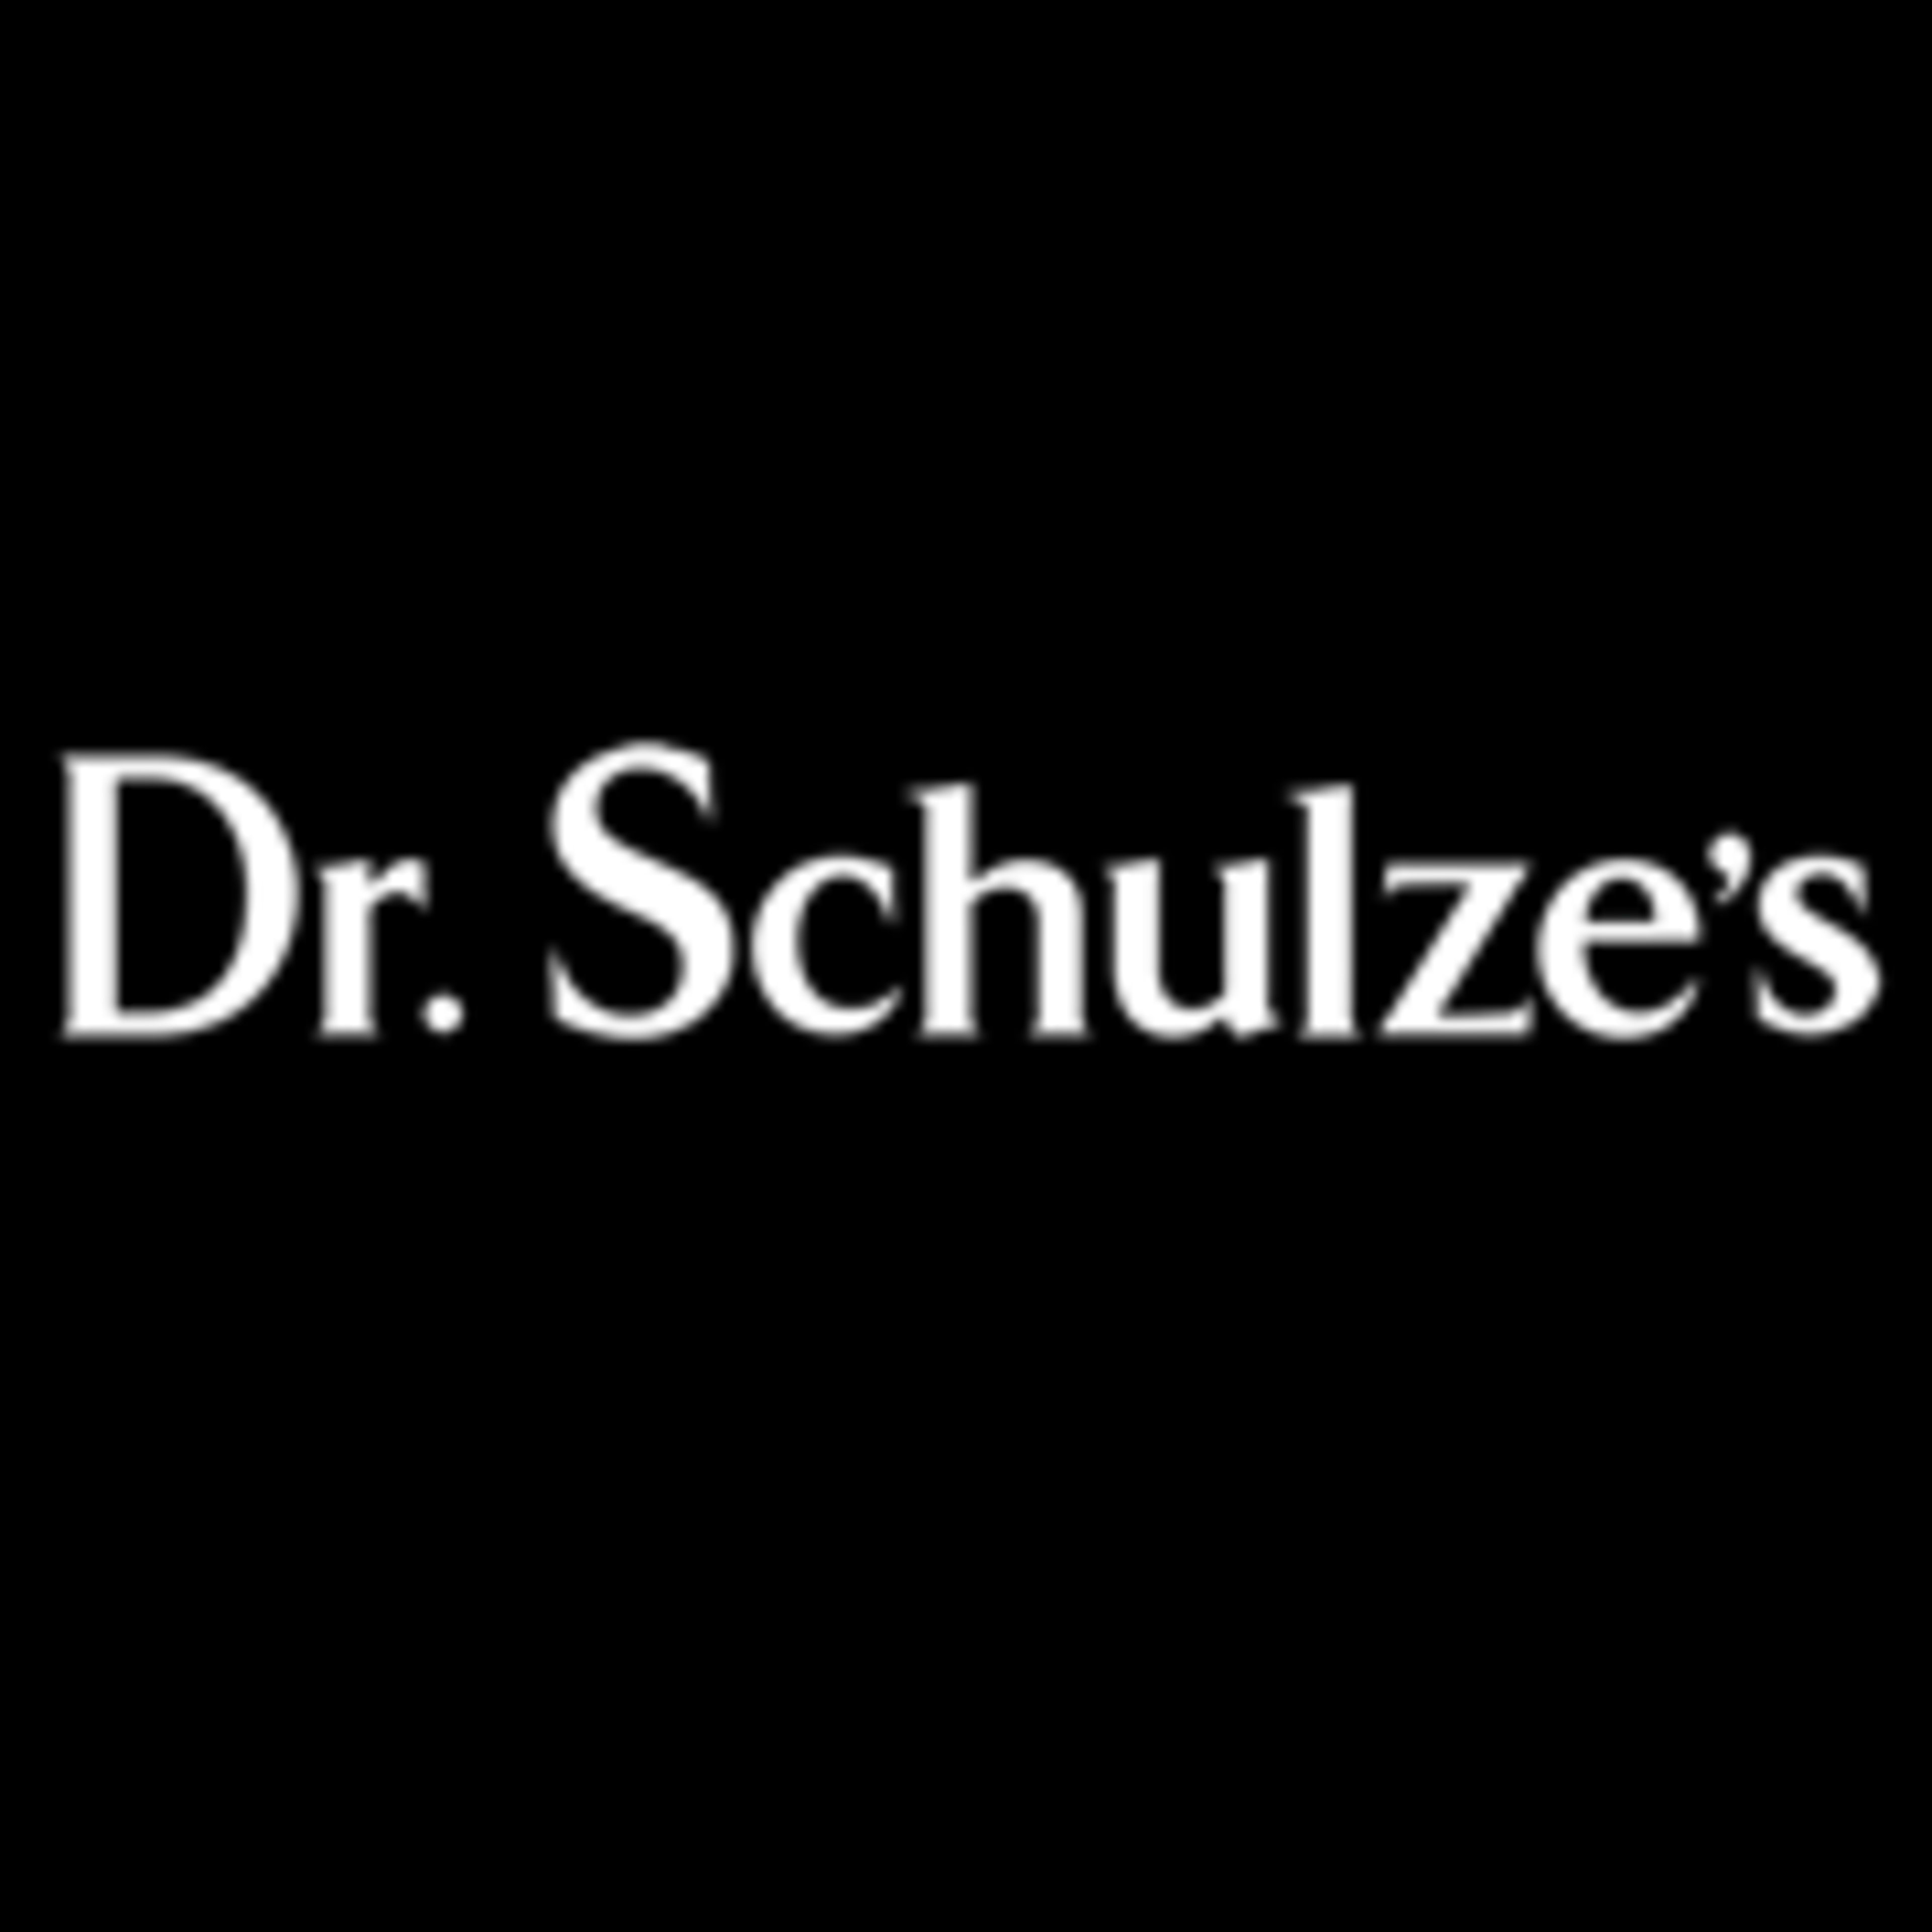 Dr. Schulze's Original Clinical Formulae Code